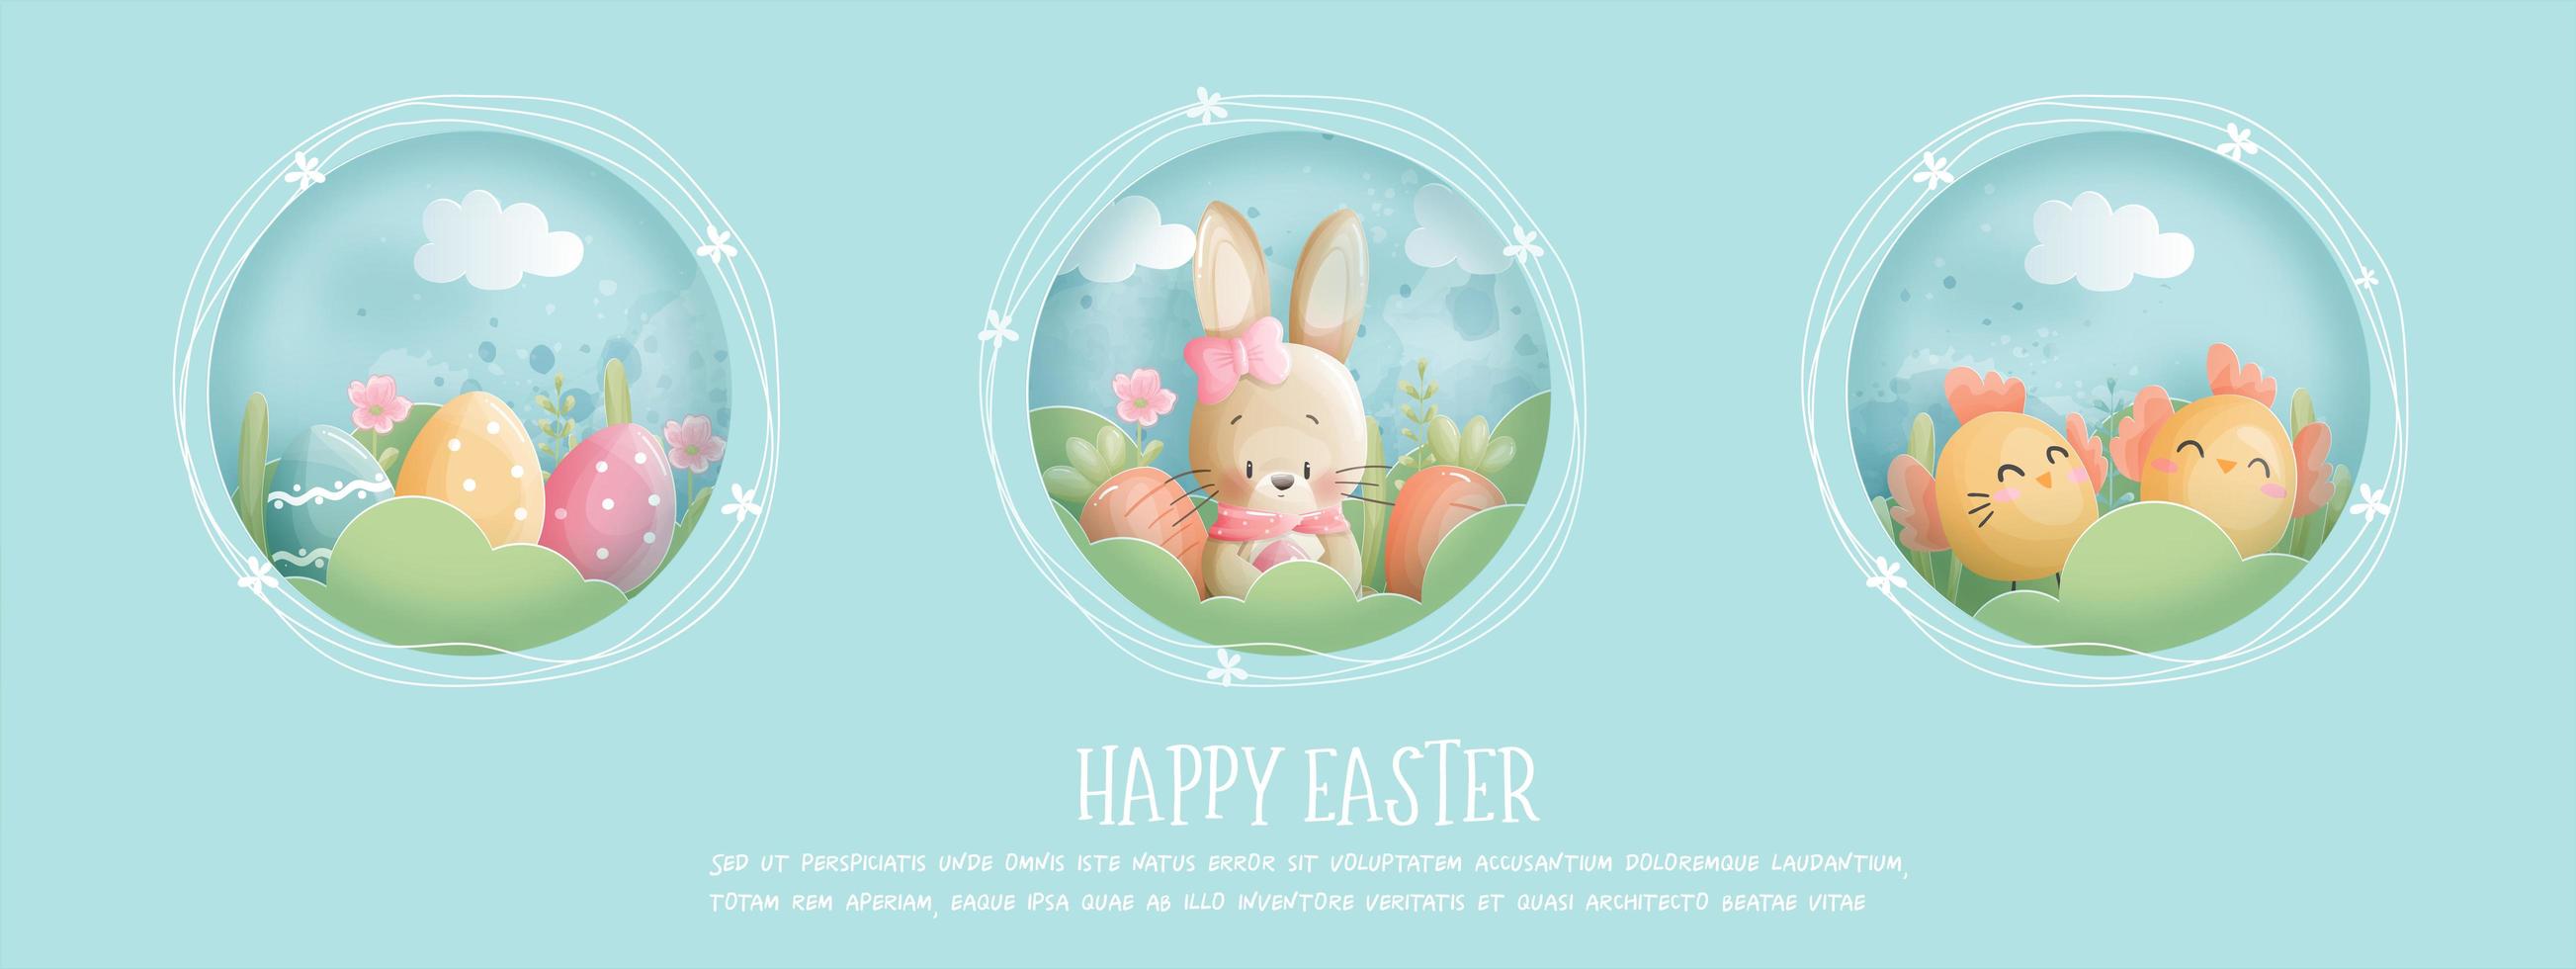 bannière de Pâques Joyeux avec lapin, oeufs et poussin vecteur